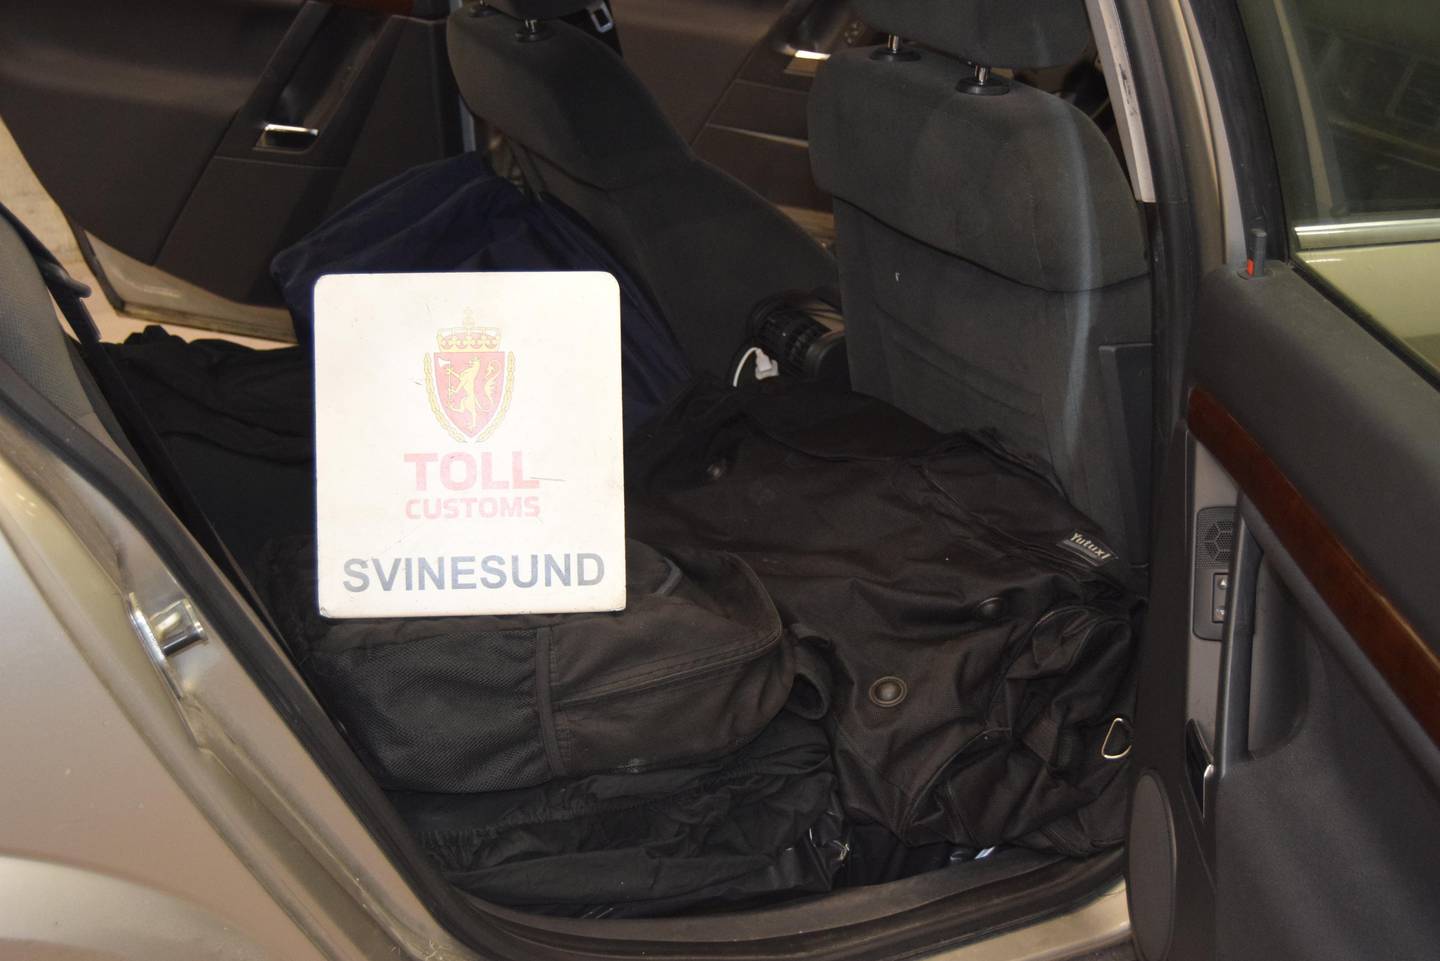 Alkoholen var forsøkt skjult i bagger og under pledd i bilens baksete og bagasjerom.